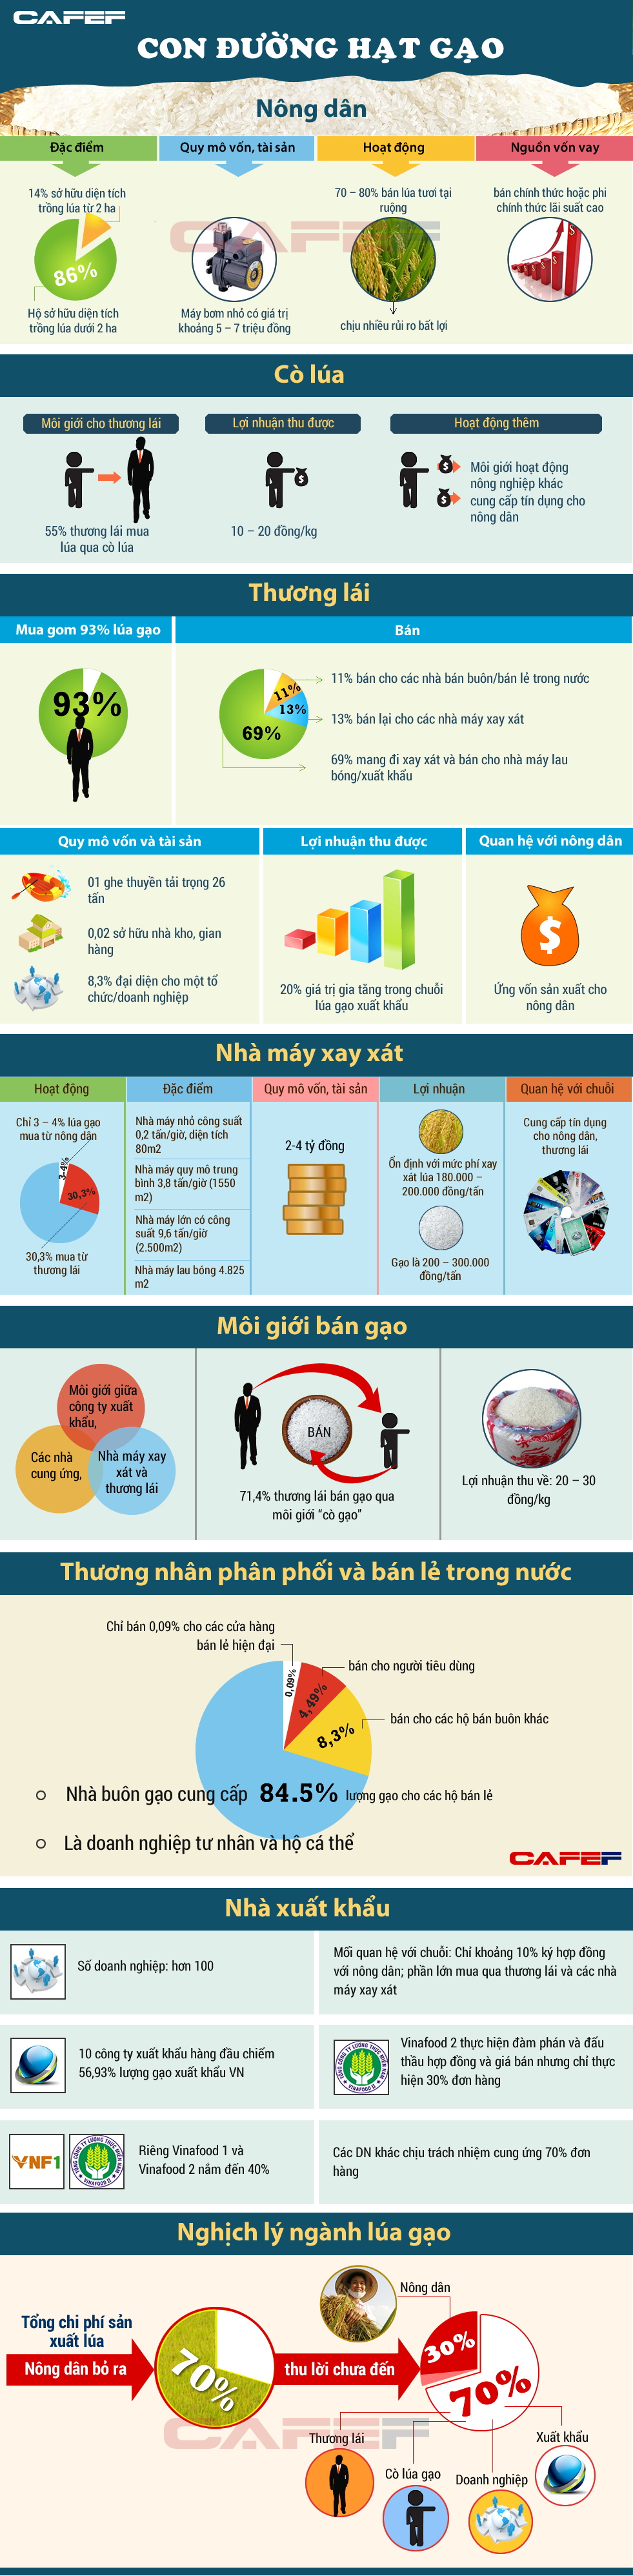 Cấu trúc chuỗi giá trị xuất khẩu gạo của Việt Nam (VERP)